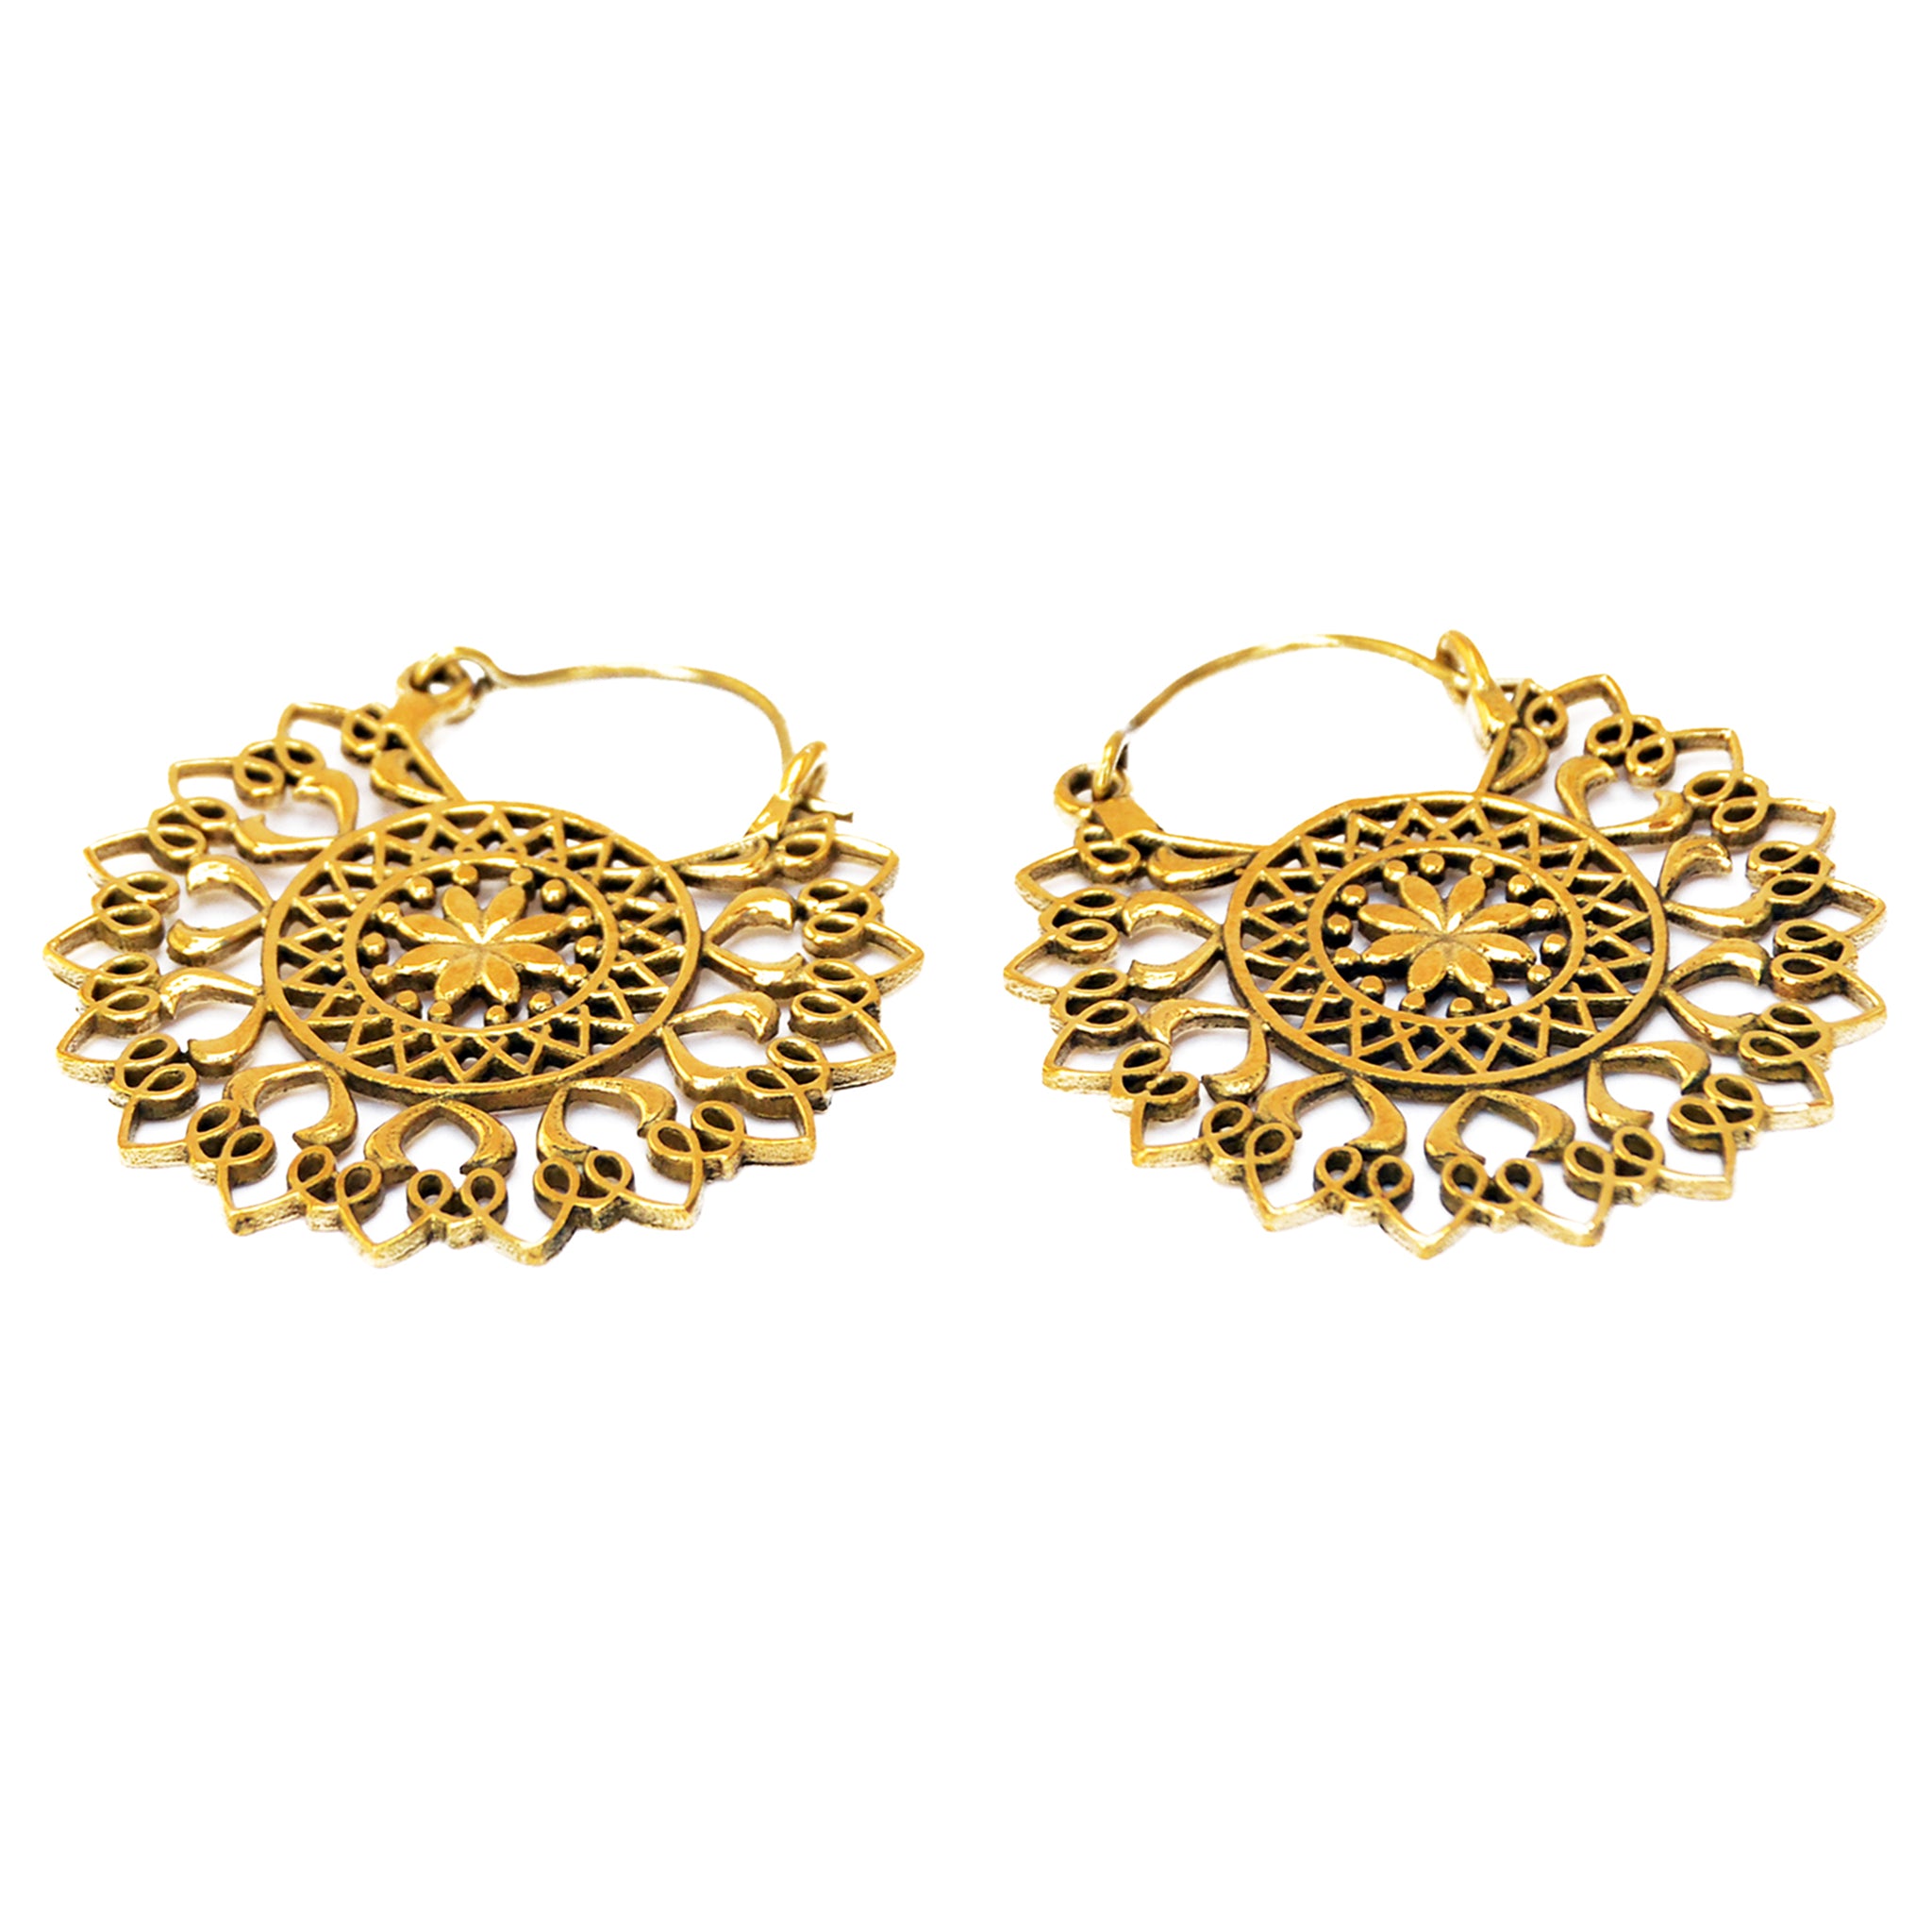 Indian floral earrings